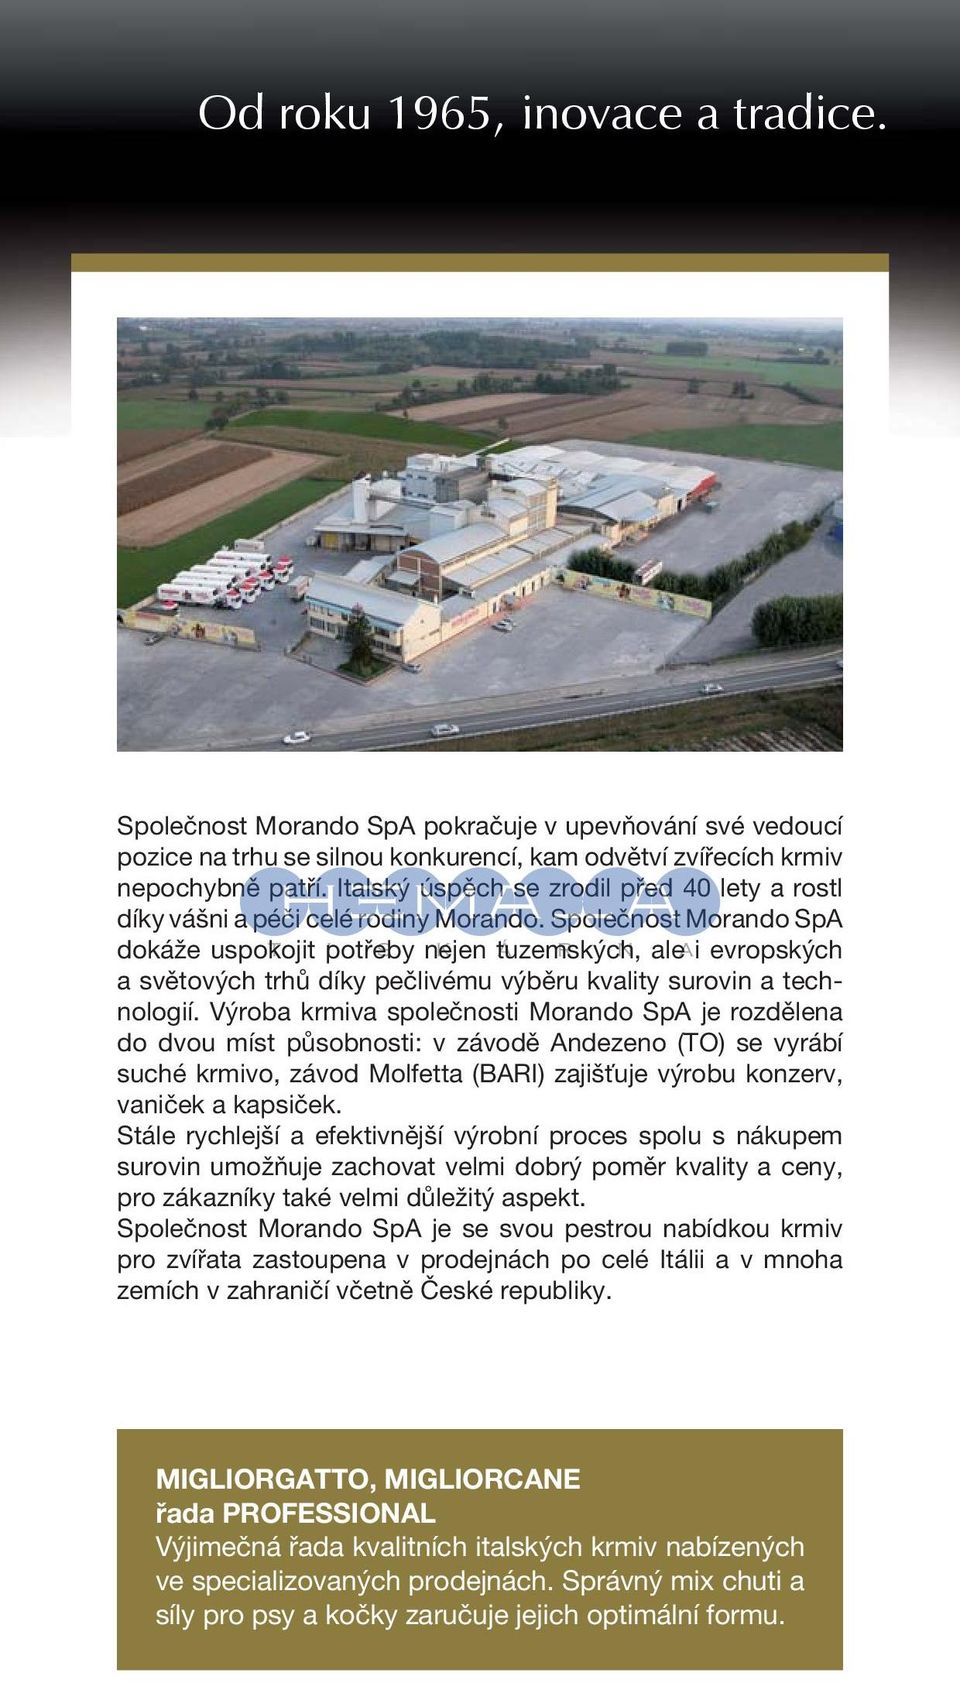 Společnost Morando SpA dokáže uspokojit potřeby nejen tuzemských, ale i evropských a světových trhů díky pečlivému výběru kvality surovin a technologií.